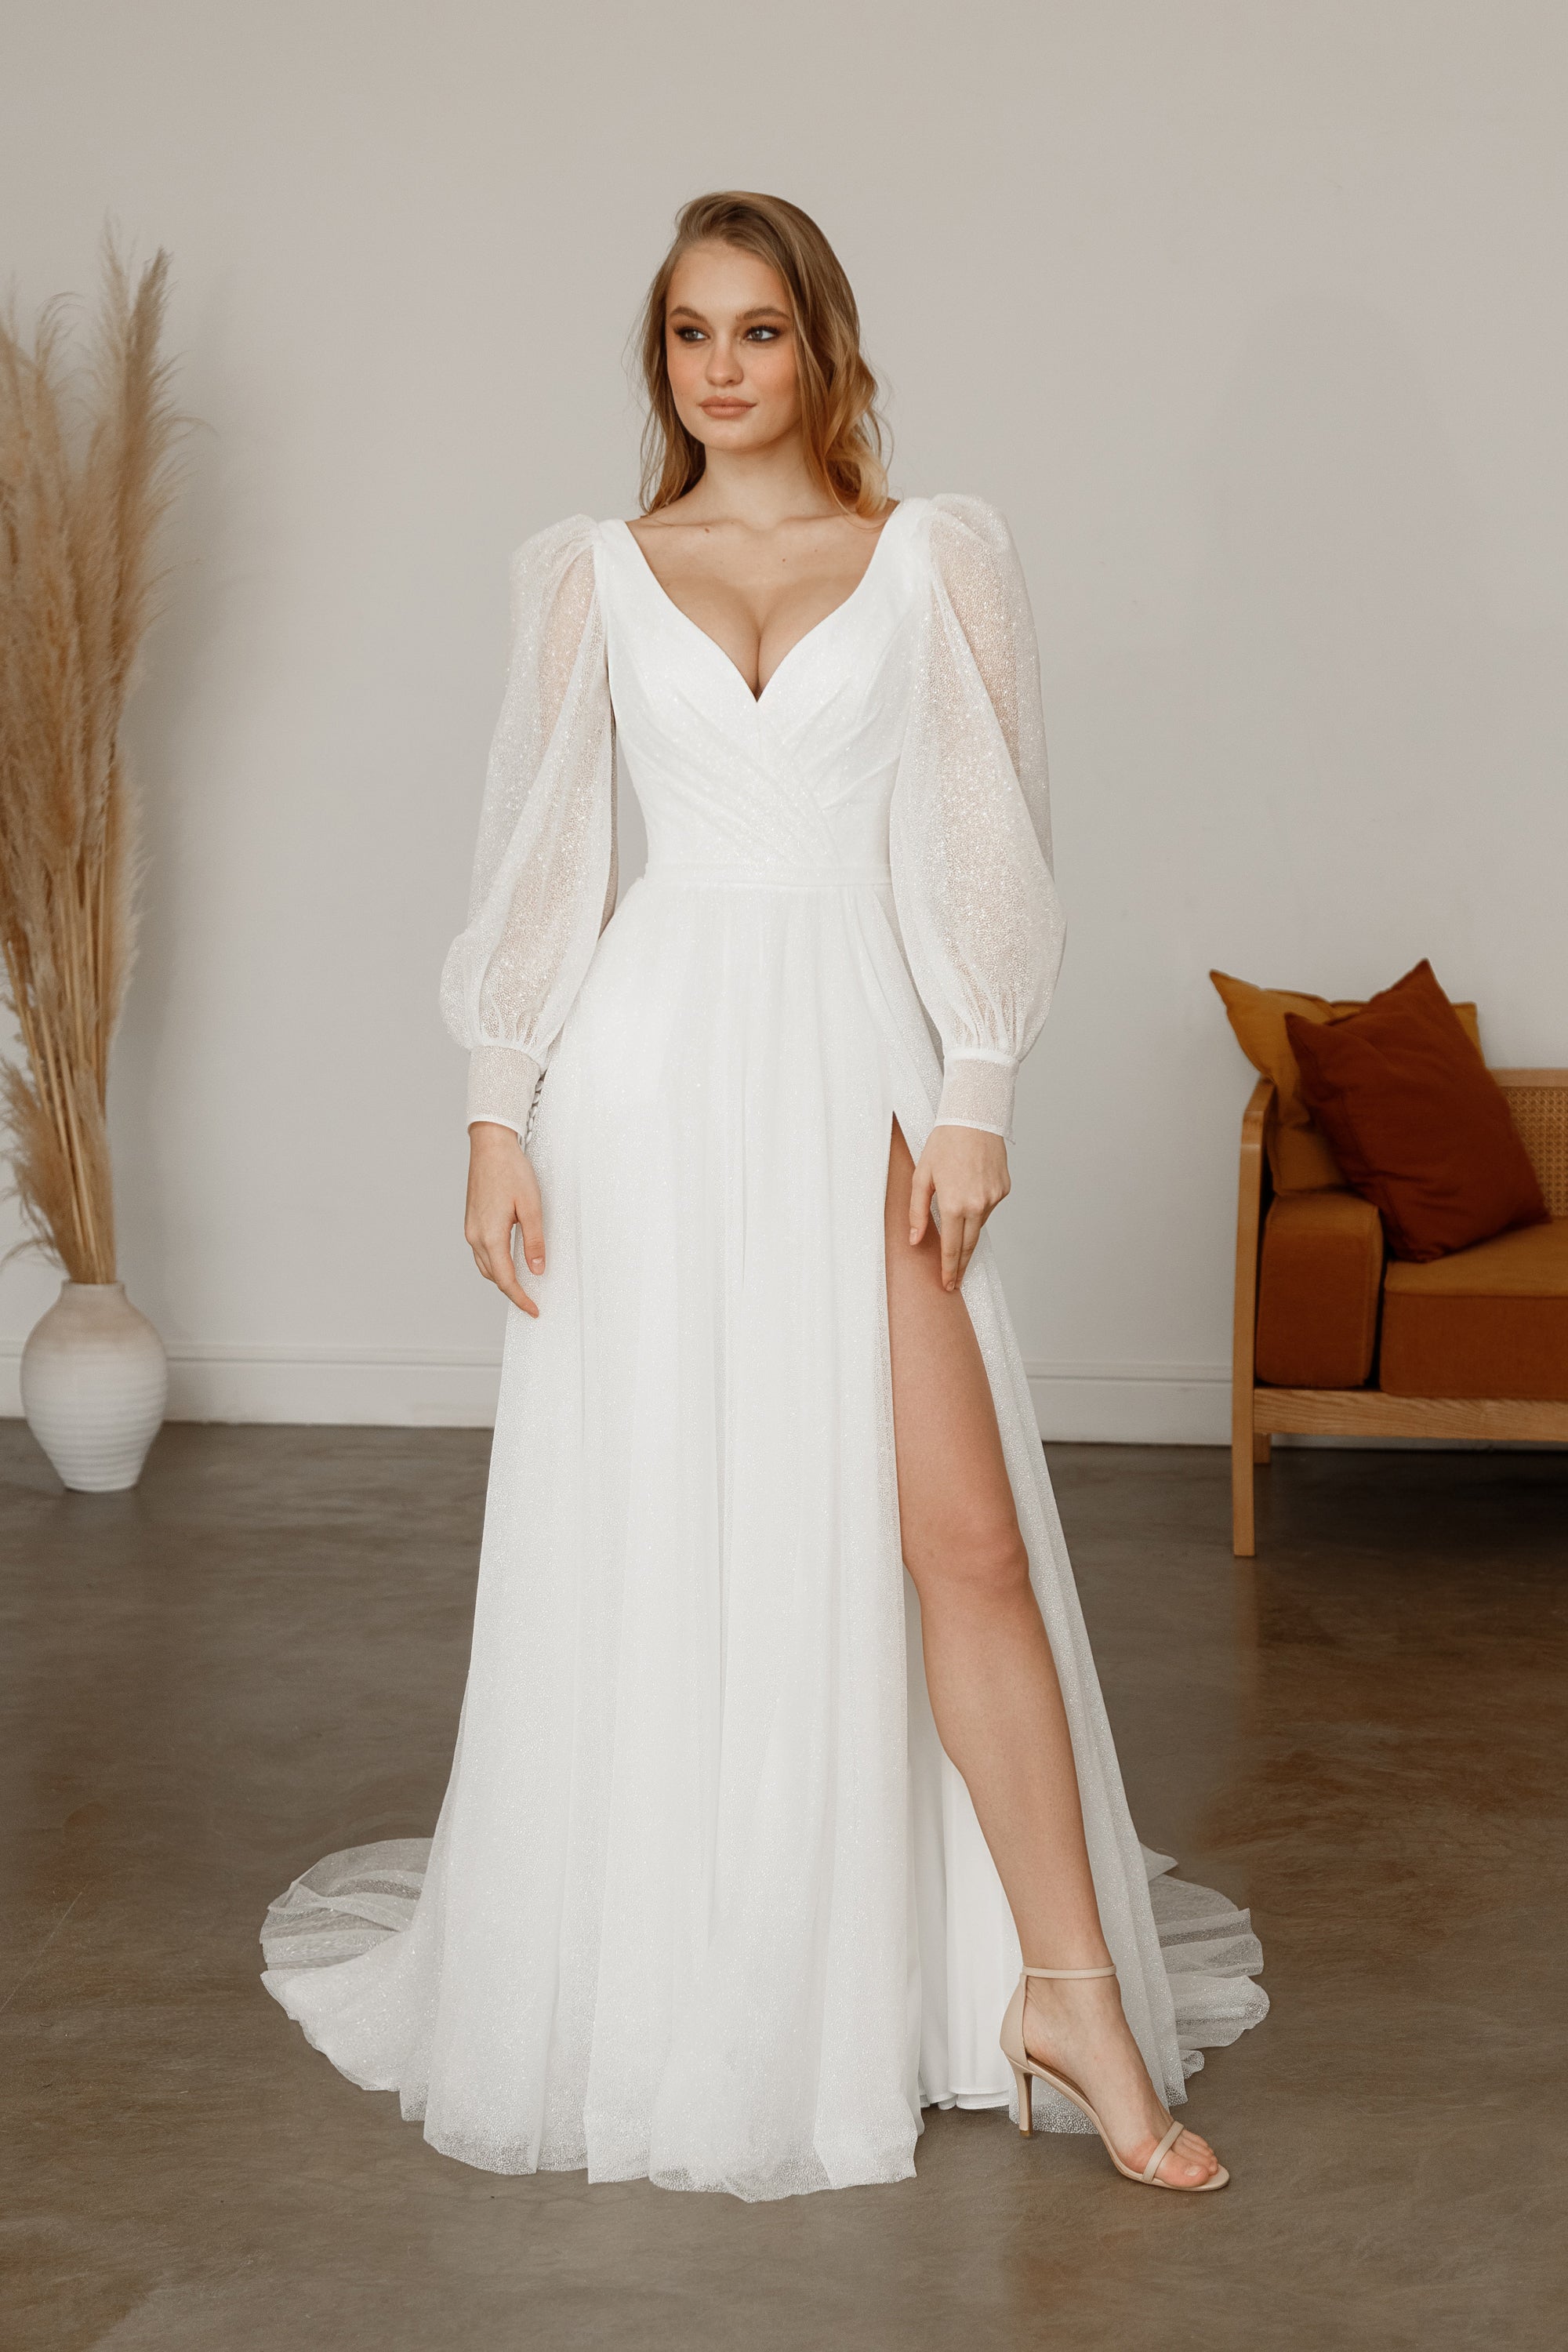 Romantic Corset Wedding Dress, Sweat Heart Neckline, Long Bishop